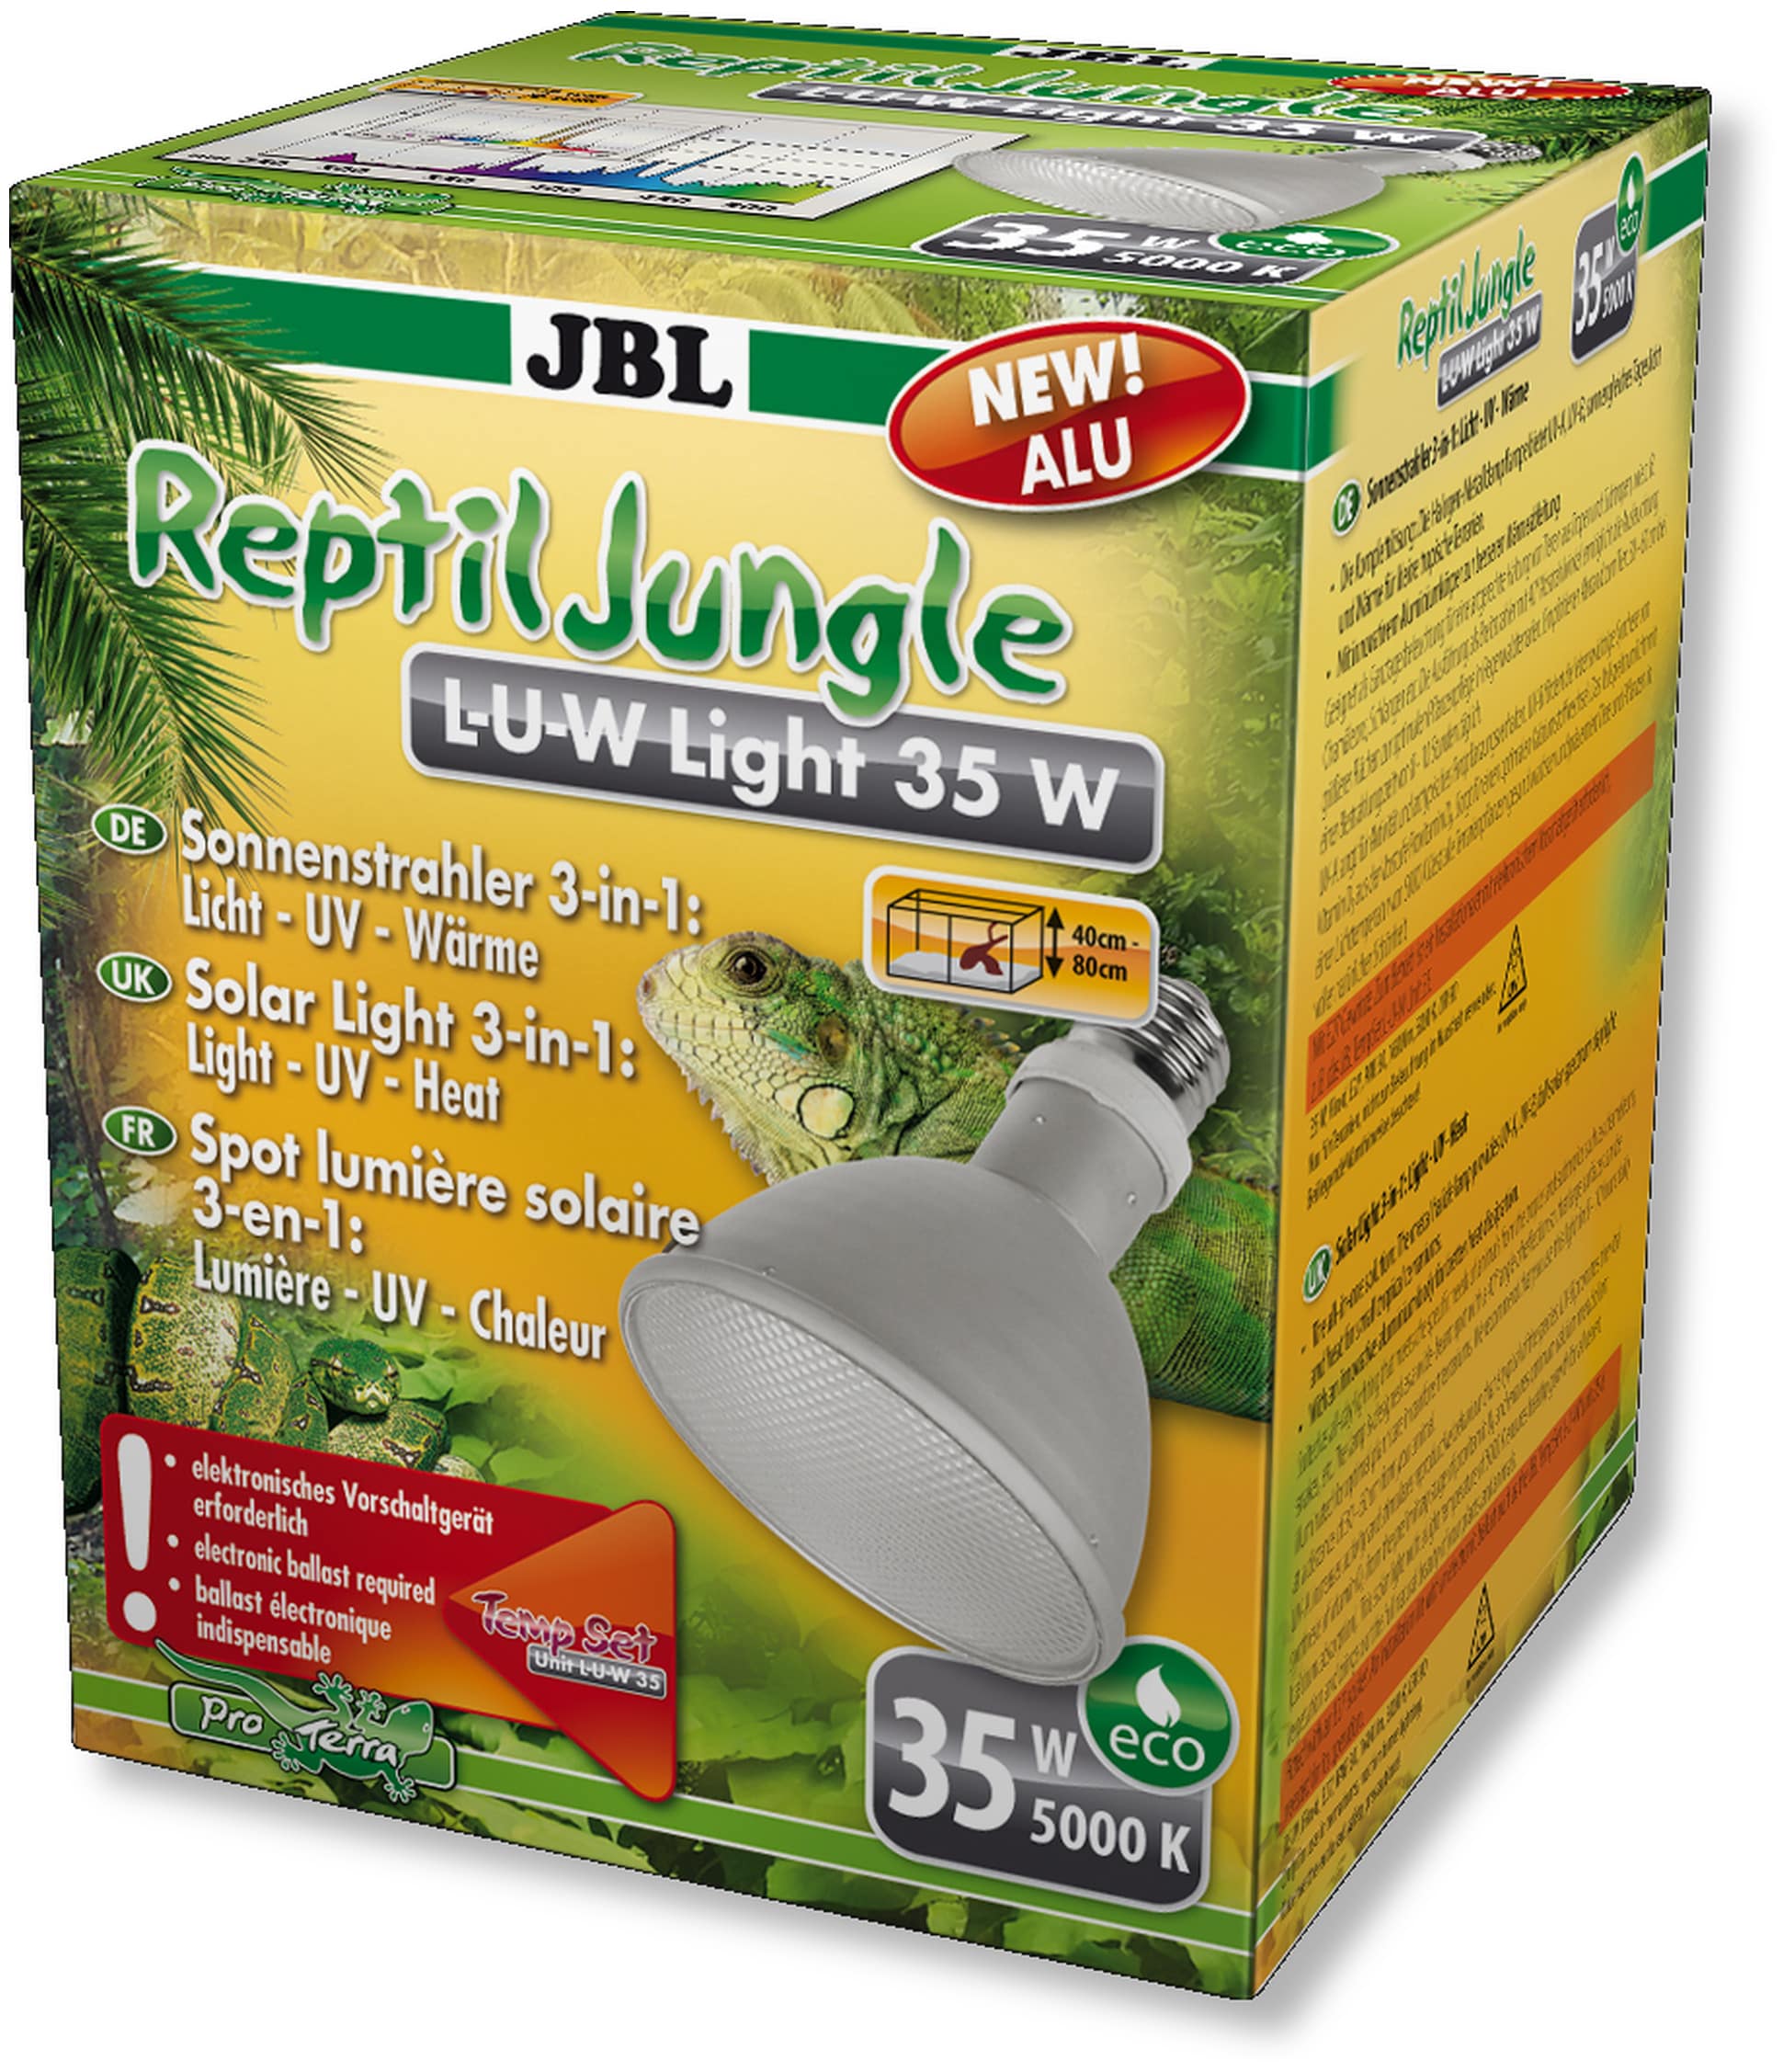 JBL ReptilJungle L-U-W Light alu 35W spot HQI en aluminium pour la reproduction du soleil en terrarium de type tropical